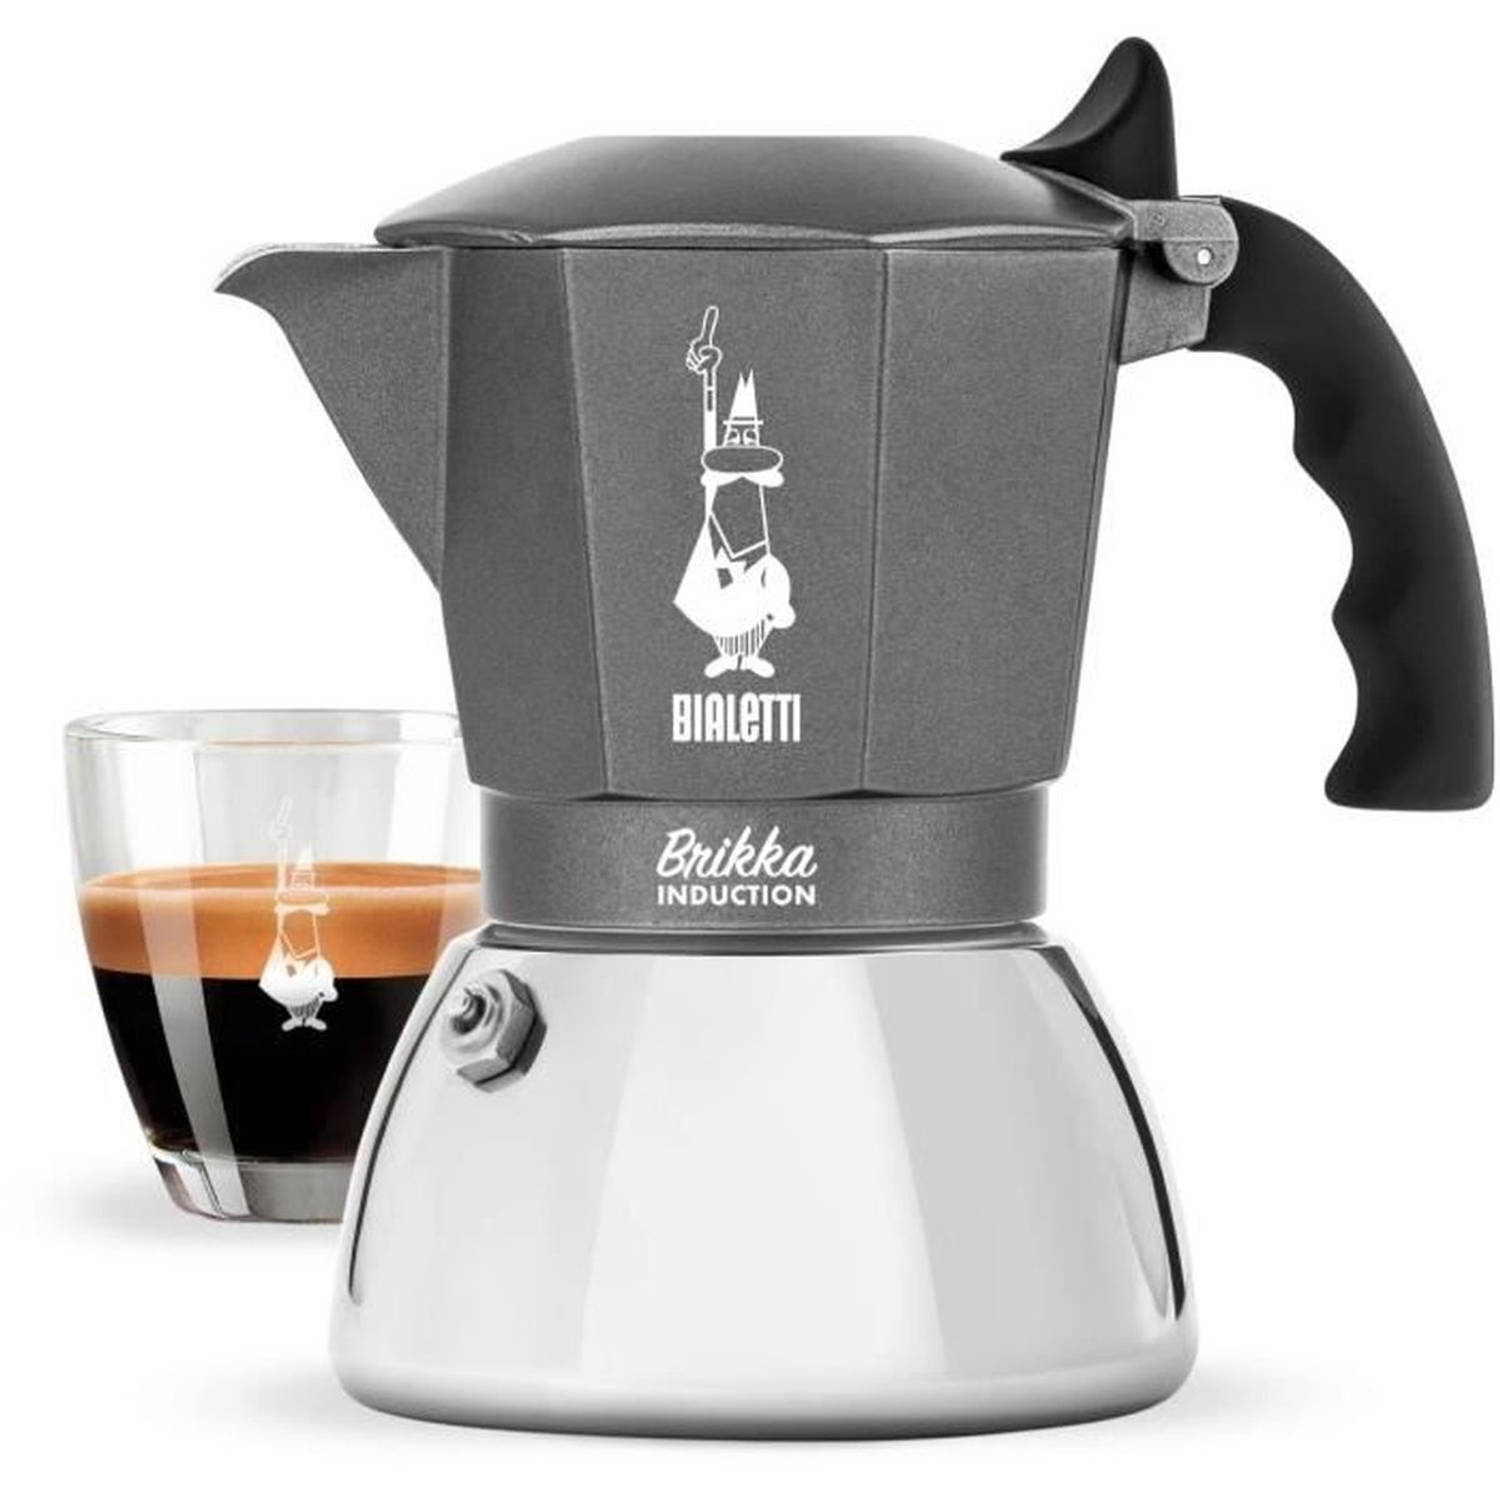 Bialetti Brikka Induction 4 Cup Espressomachine Zwart, Zilver